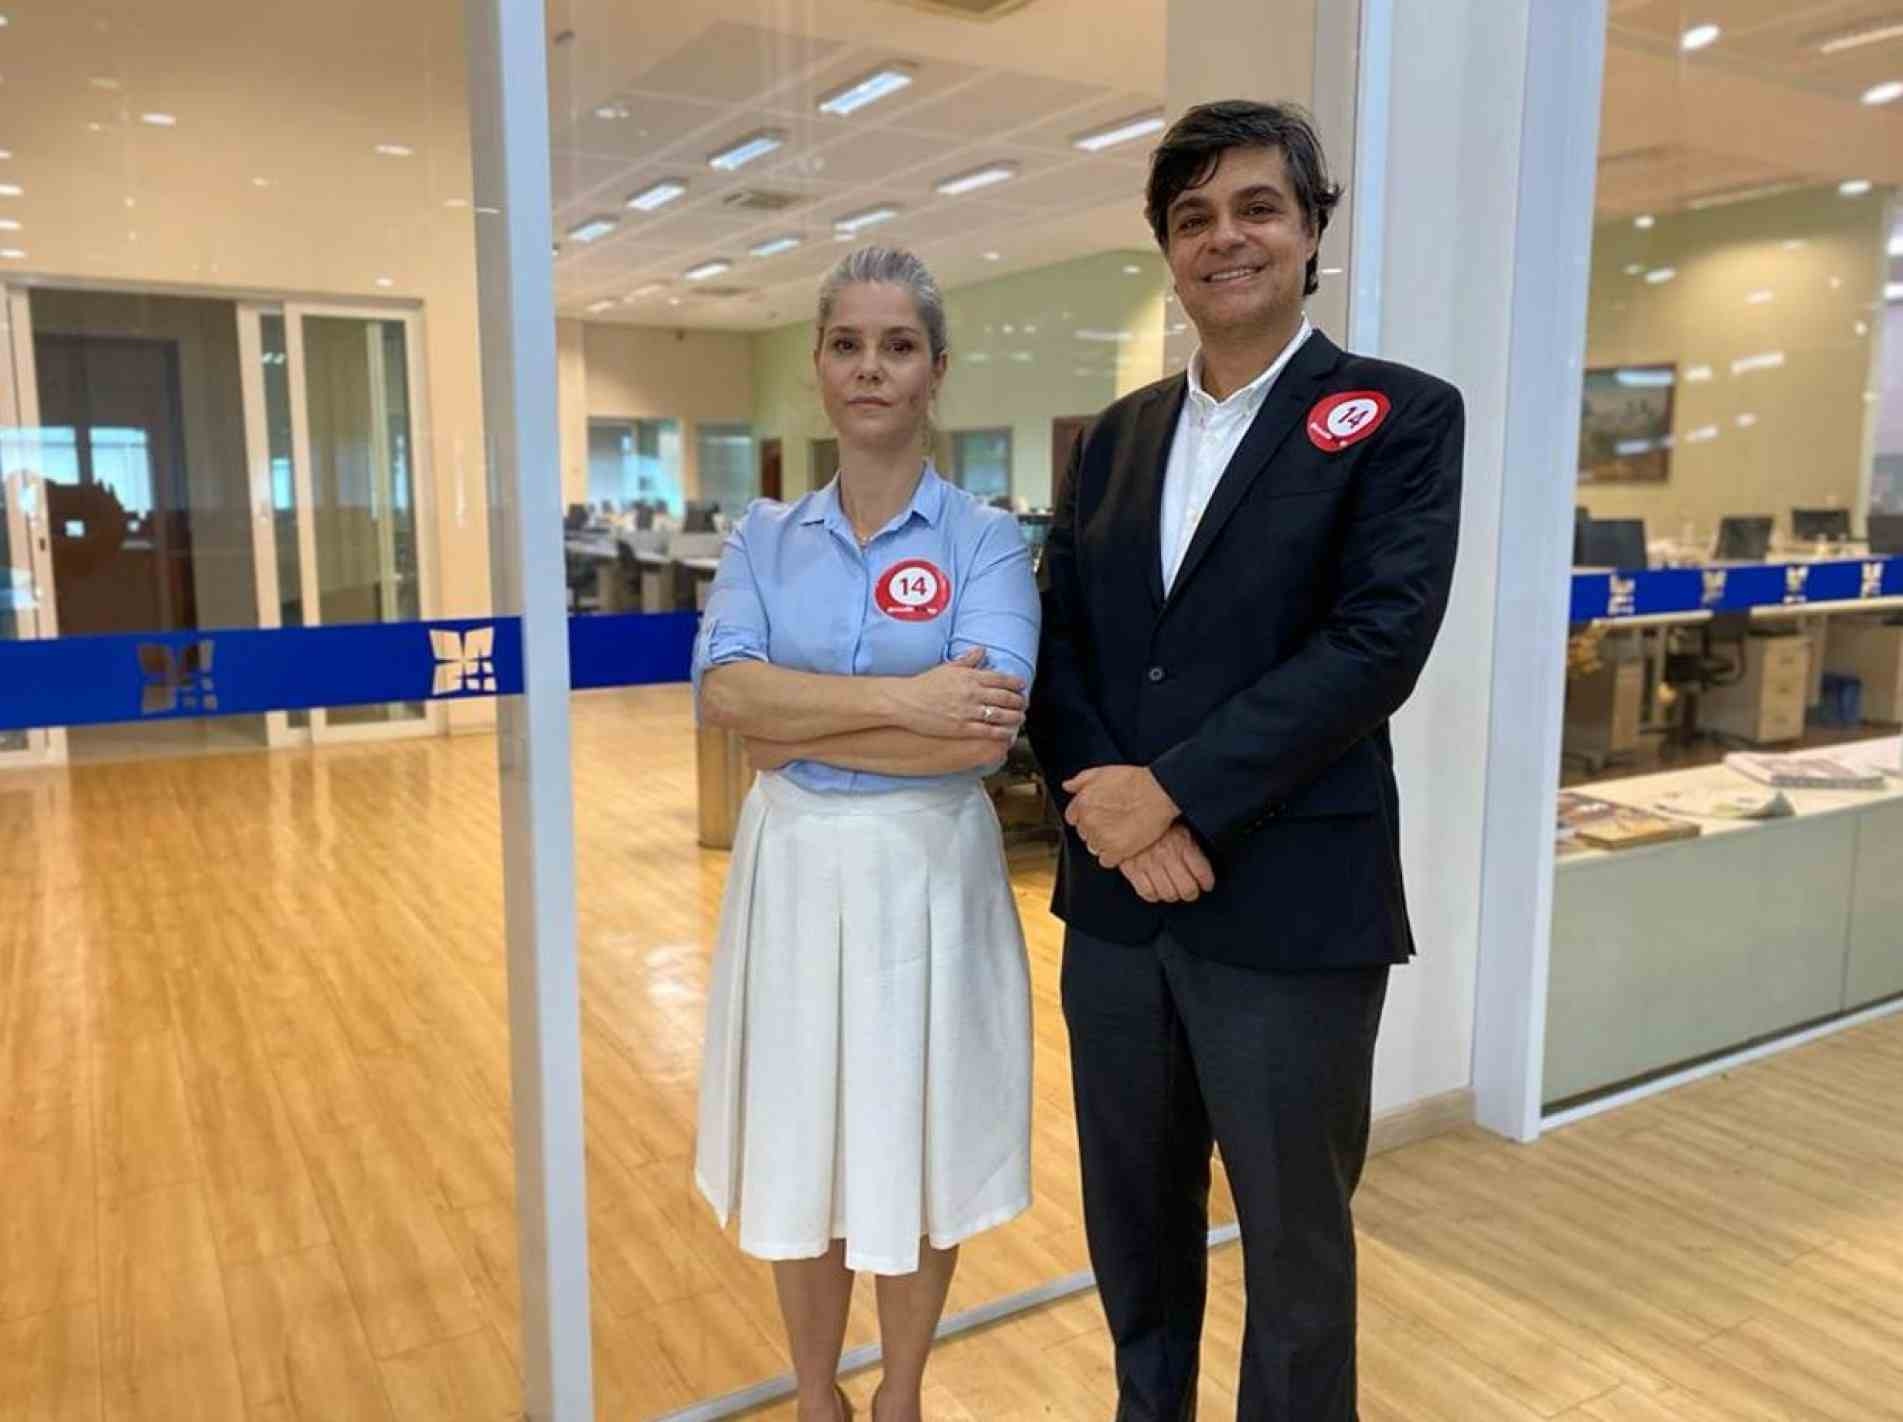 Patrícia Vanzolini e Leonardo Sica, candidatos a presidente e vice na chapa 4 Muda OAB-SP: dupla já disputou eleição em 2018, mas com a chapa 